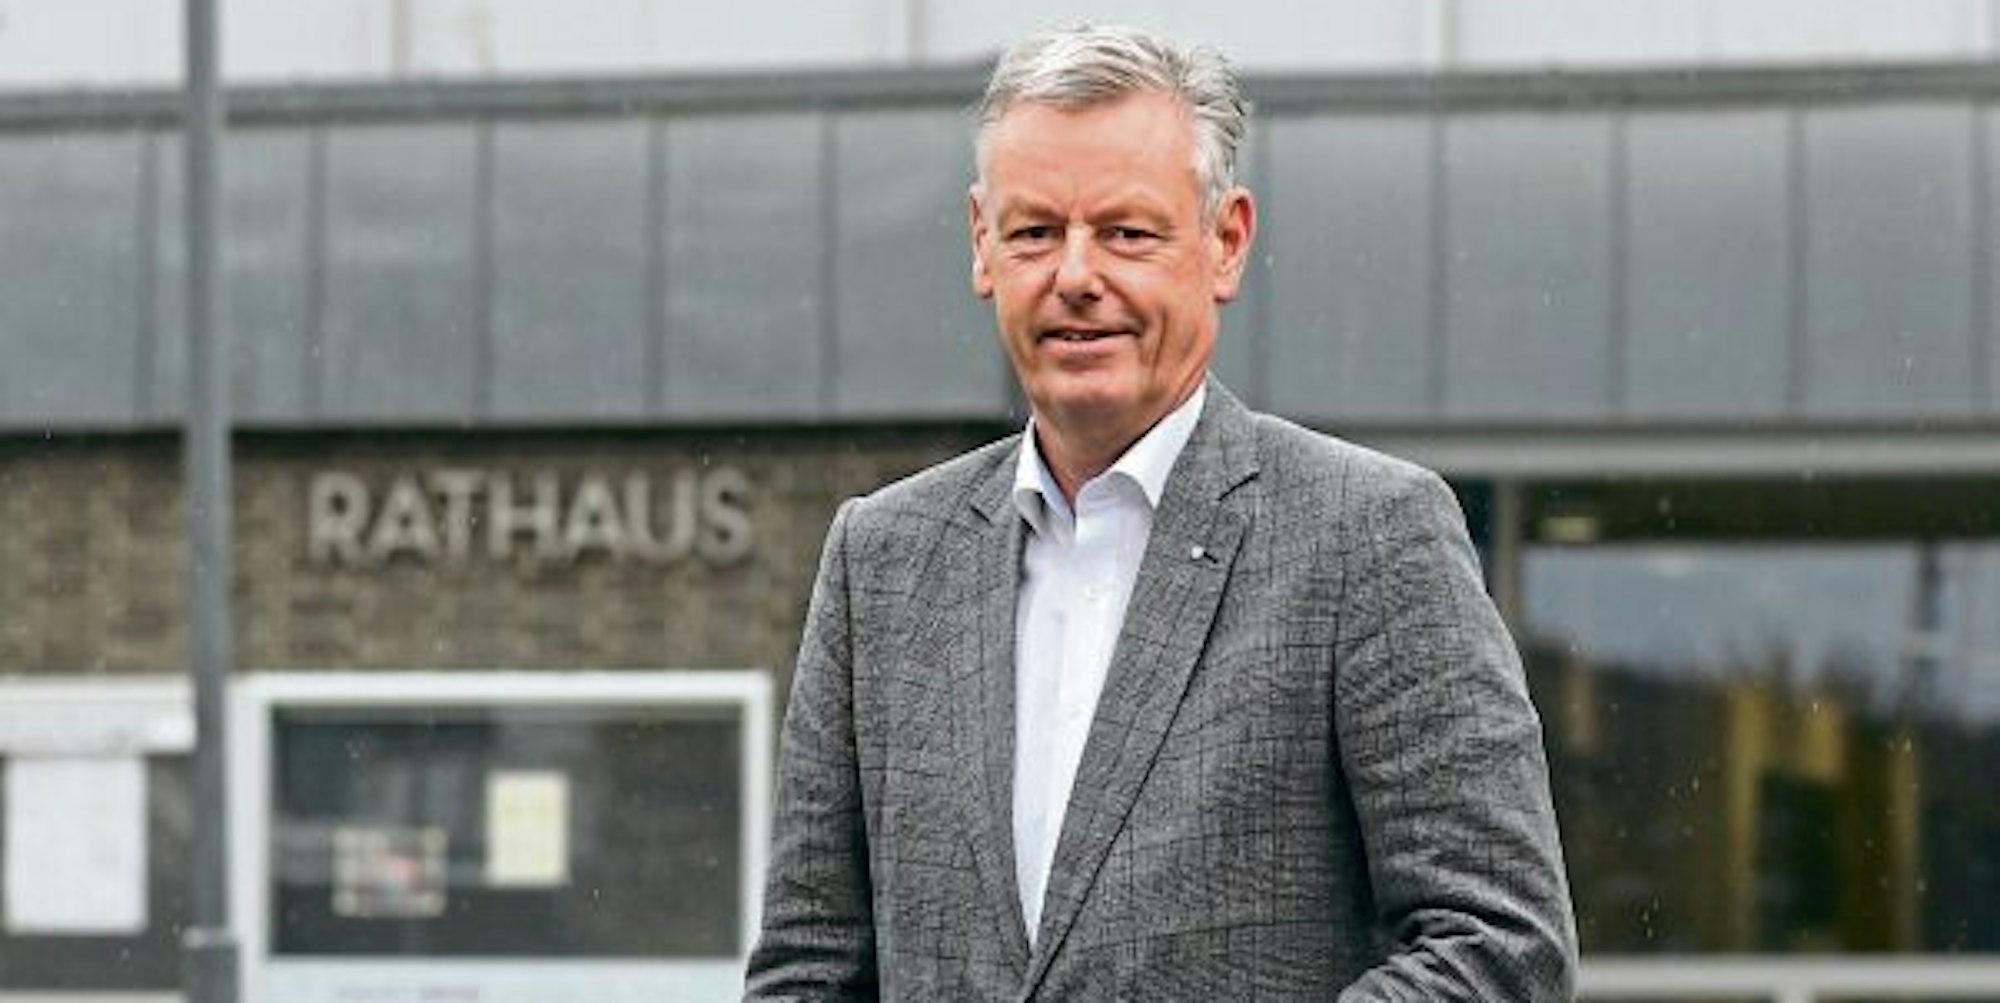 Die Entscheidung für eine Karriere in der Stadtverwaltung habe er nie bereut, sagt Horst Krybus. Jetzt verlässt er das Bürgermeisterbüro im Rathaus und geht in den Ruhestand.